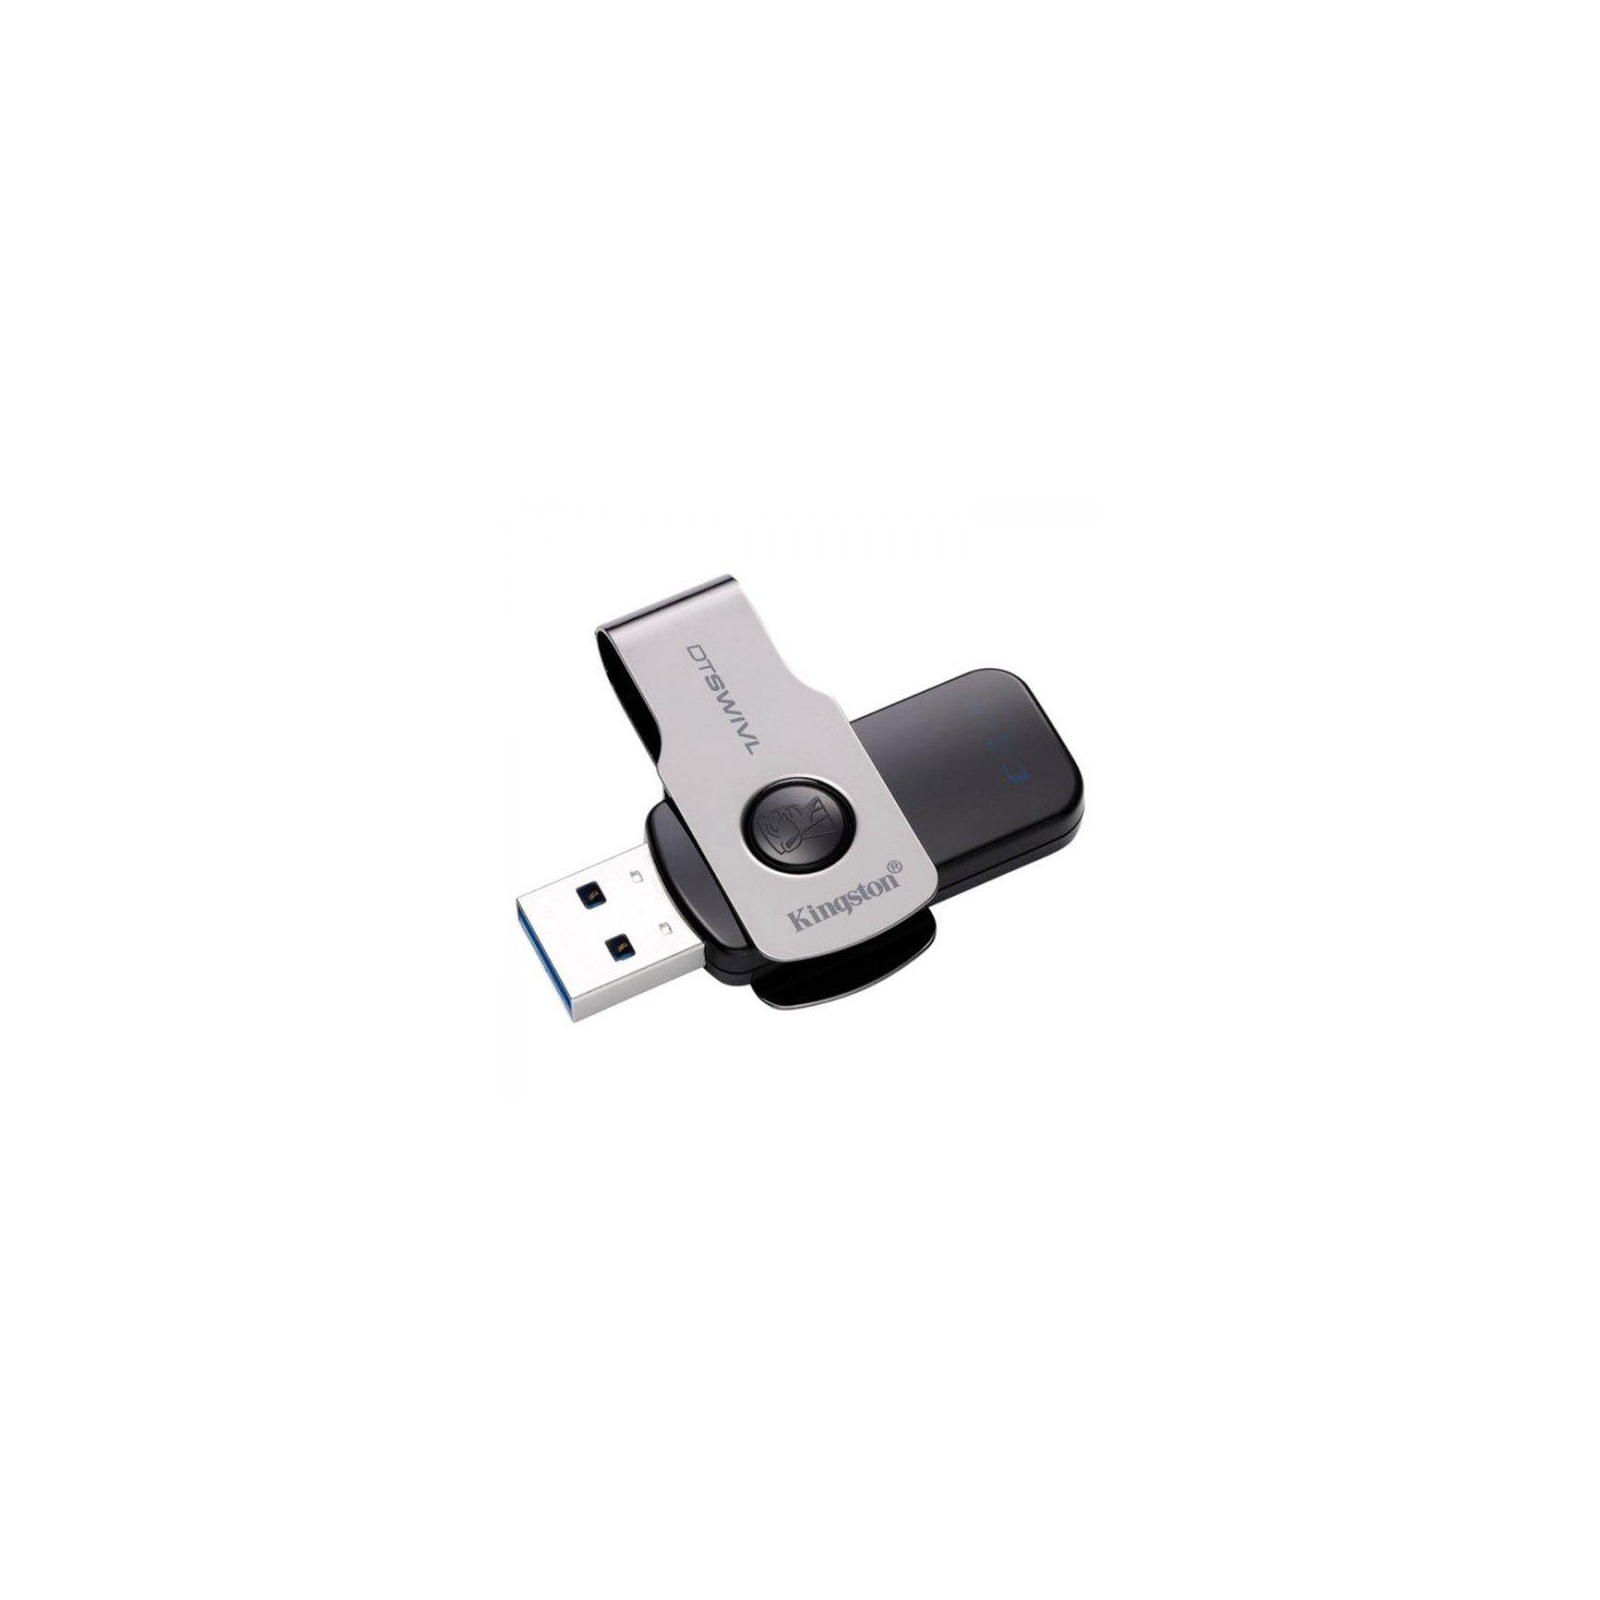 USB флеш накопичувач Kingston 32GB DT SWIVL Metal USB 3.0 (DTSWIVL/32GB) зображення 2